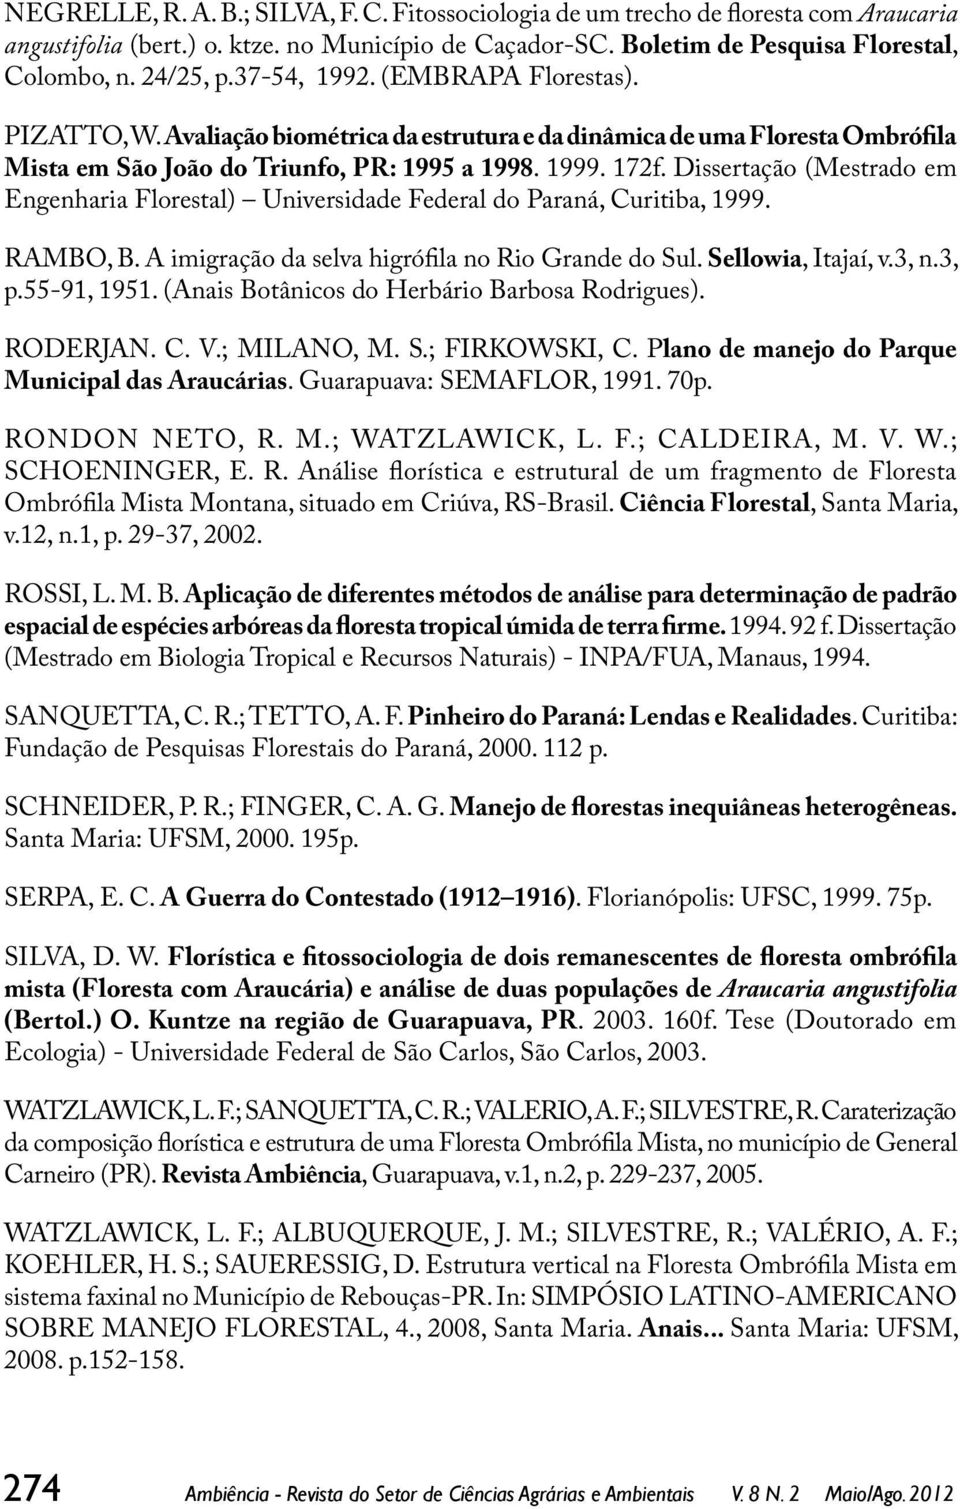 Dissertação (Mestrado em Engenharia Florestal) Universidade Federal do Paraná, Curitiba, 1999. RAMBO, B. A imigração da selva higrófila no Rio Grande do Sul. Sellowia, Itajaí, v.3, n.3, p.55-91, 1951.